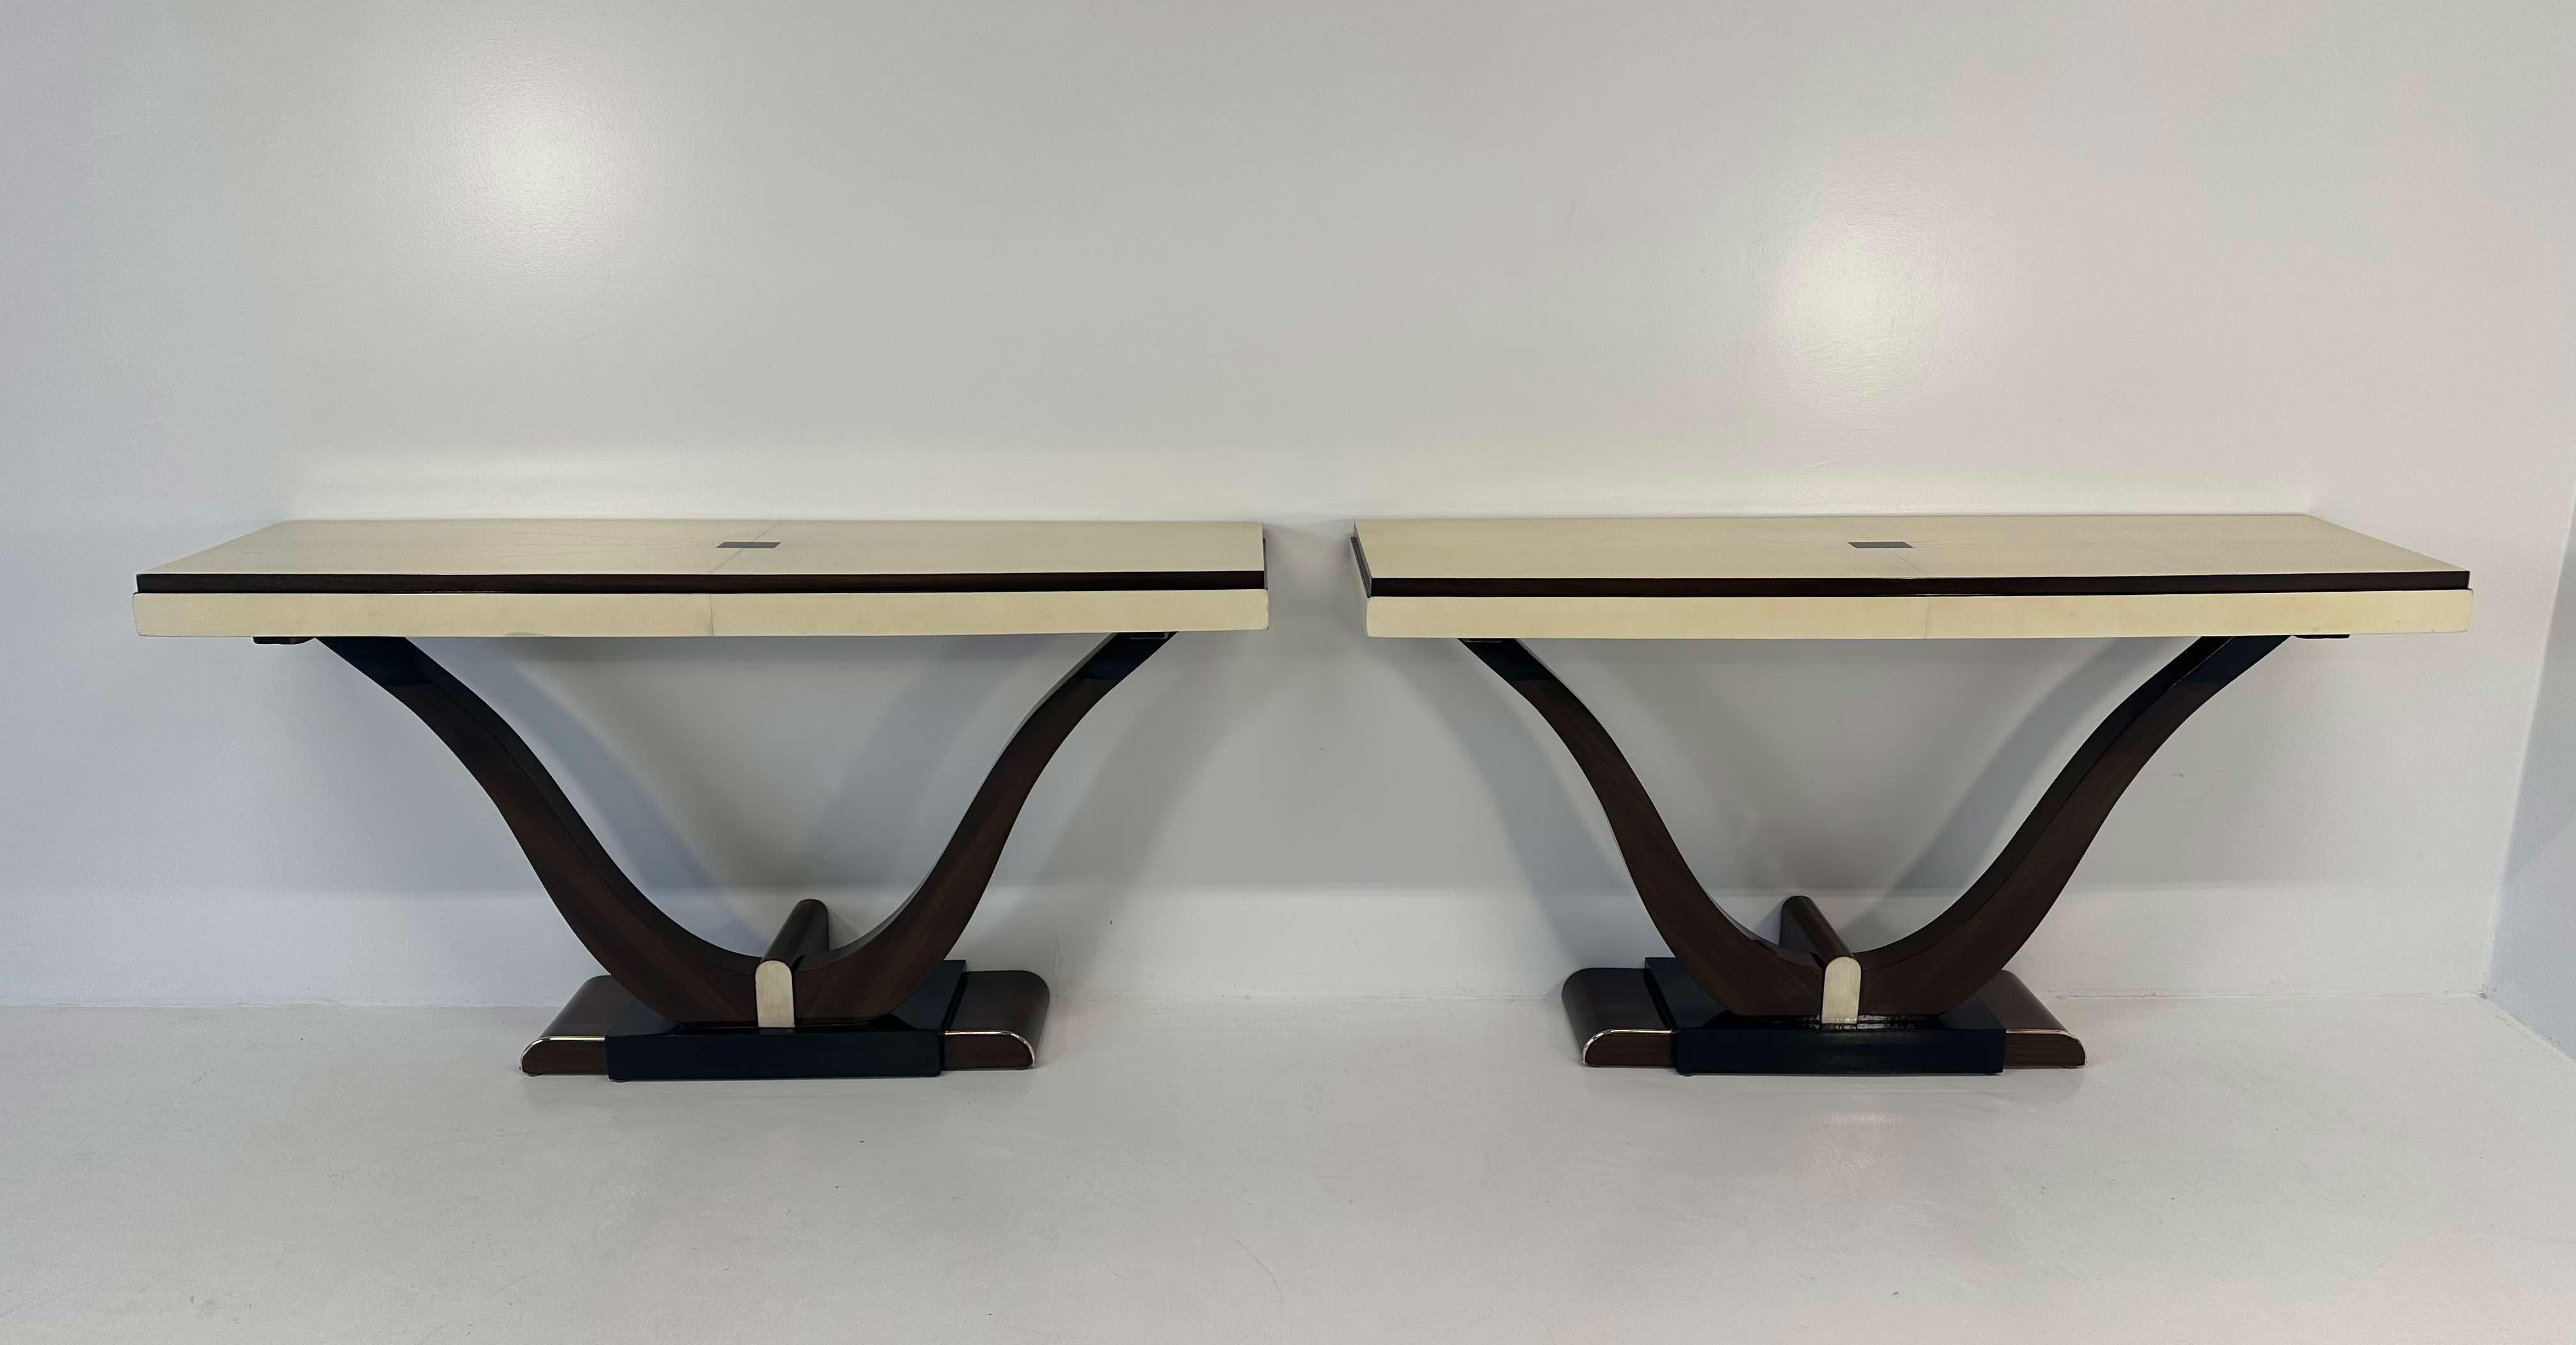 Cette paire de consoles jumelles a été produite en France dans les années 1930.
Le plateau, son profil et un petit détail décoratif sur la base sont en parchemin. Les pieds sinueux, une partie de la base et le rectangle du plateau sont en bois